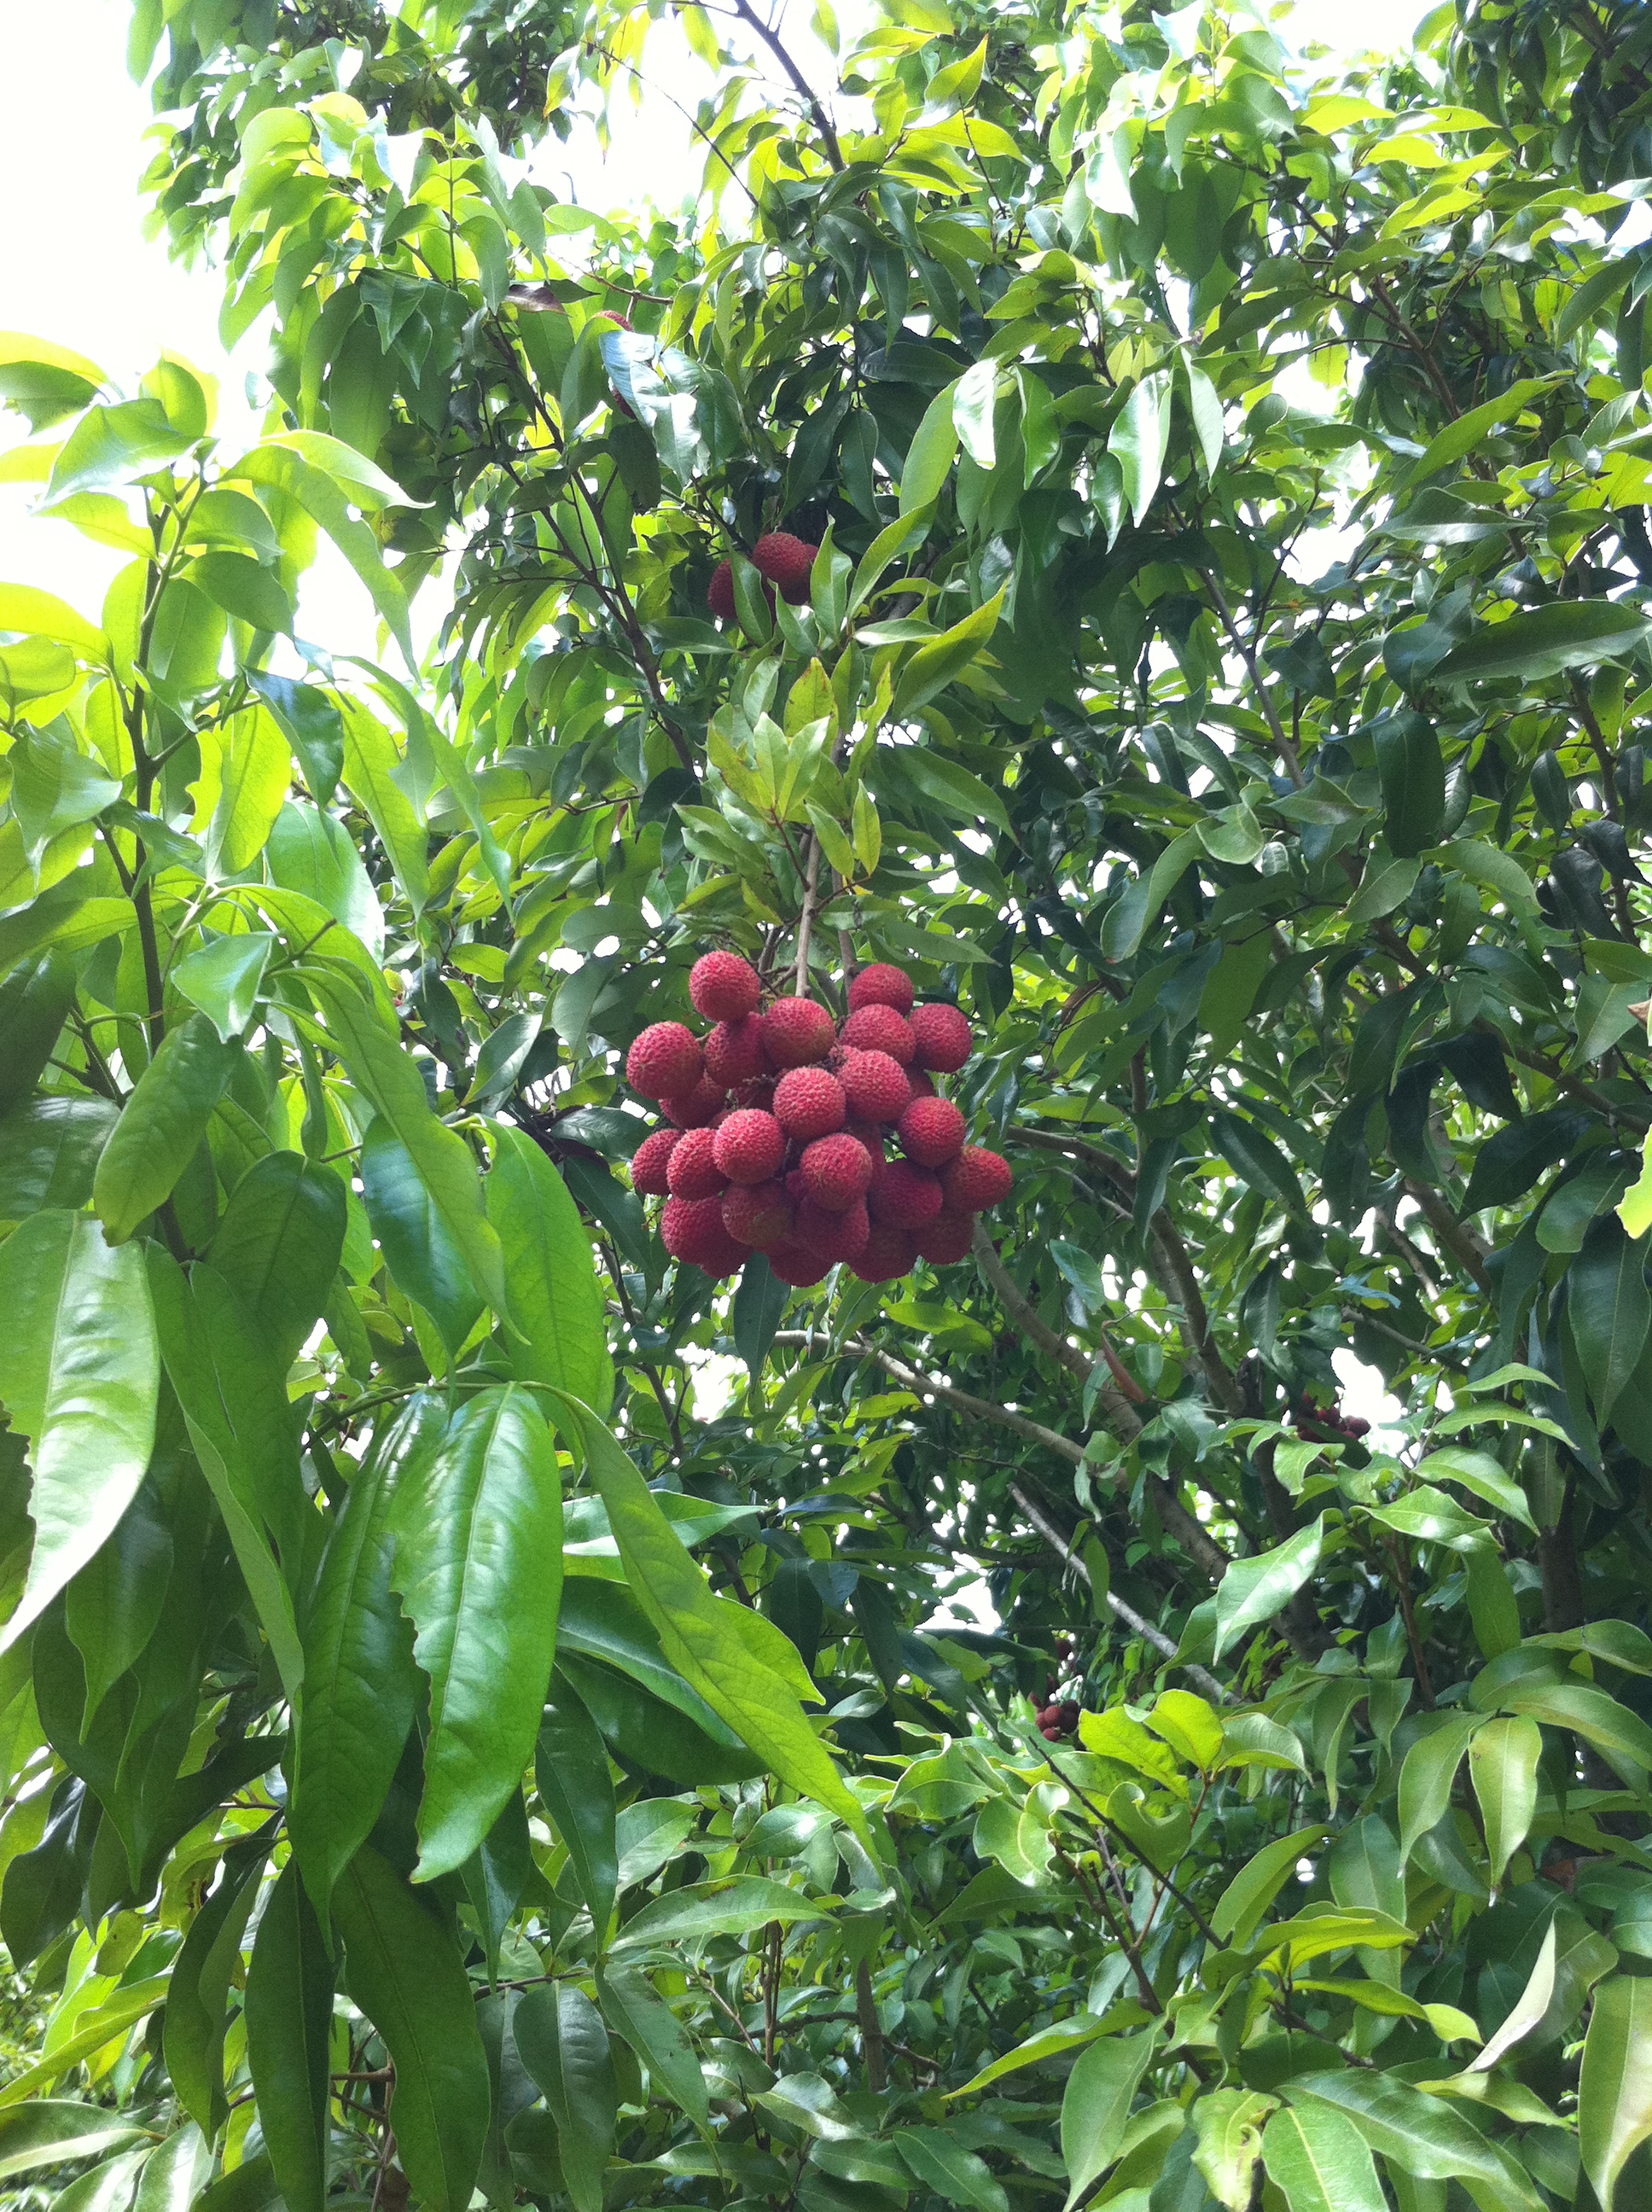 في ينابيع بونيتا ما هي أشجار الفاكهة الرئيسية